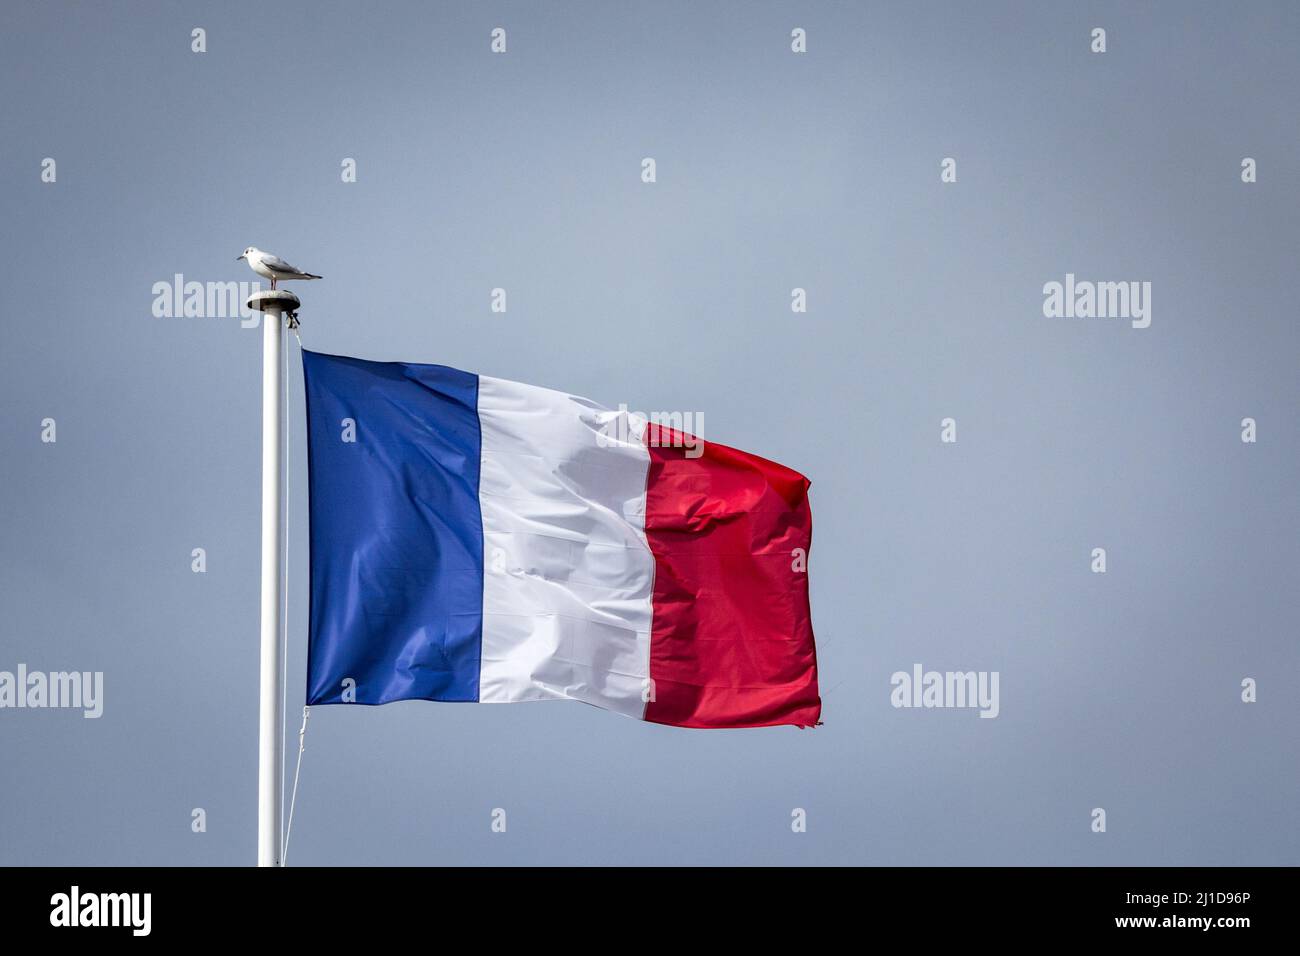 Bild einer französischen Flagge, die in der Luft winkt, mit einem Vogel, einer Möwe, die darauf steht. Die Nationalflagge Frankreichs oder Drapeau francais ist eine dreifarbige Fla Stockfoto